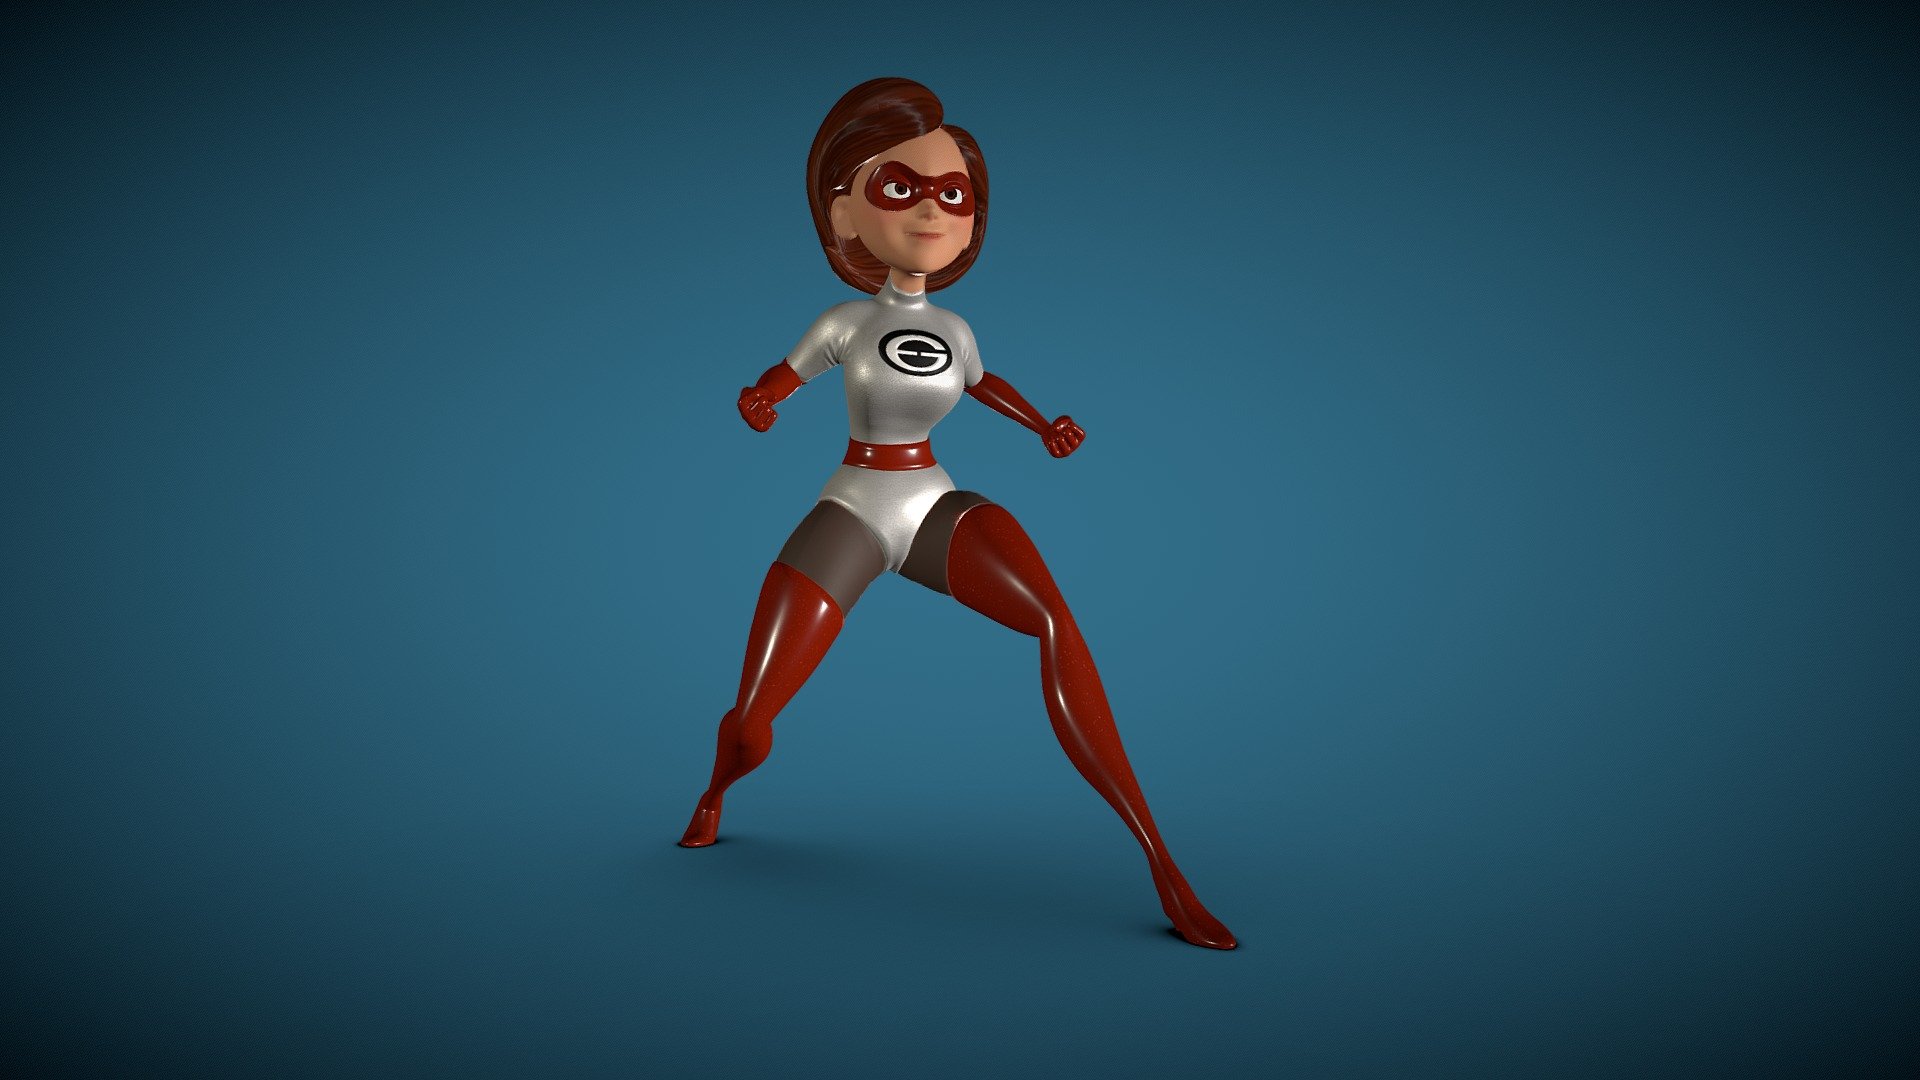 Modelo 3D baseado na personagem Mulher-Elástica, com o uniforme clássico branco e vermelho como visto no filme &ldquo;The Incredibles 2